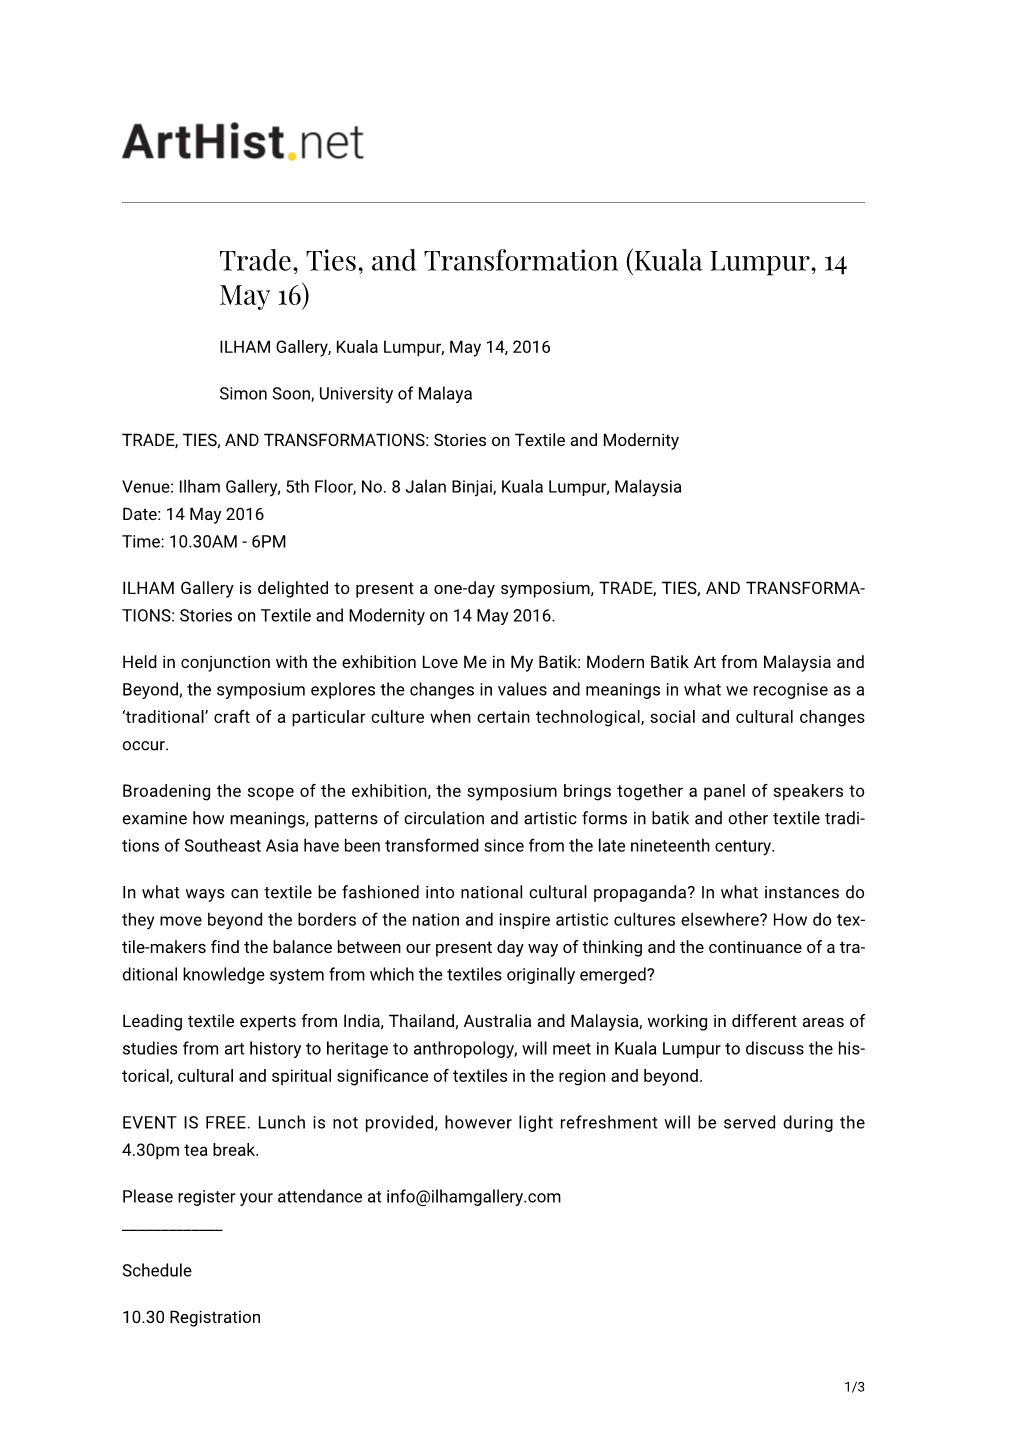 Trade, Ties, and Transformation (Kuala Lumpur, 14 May 16)